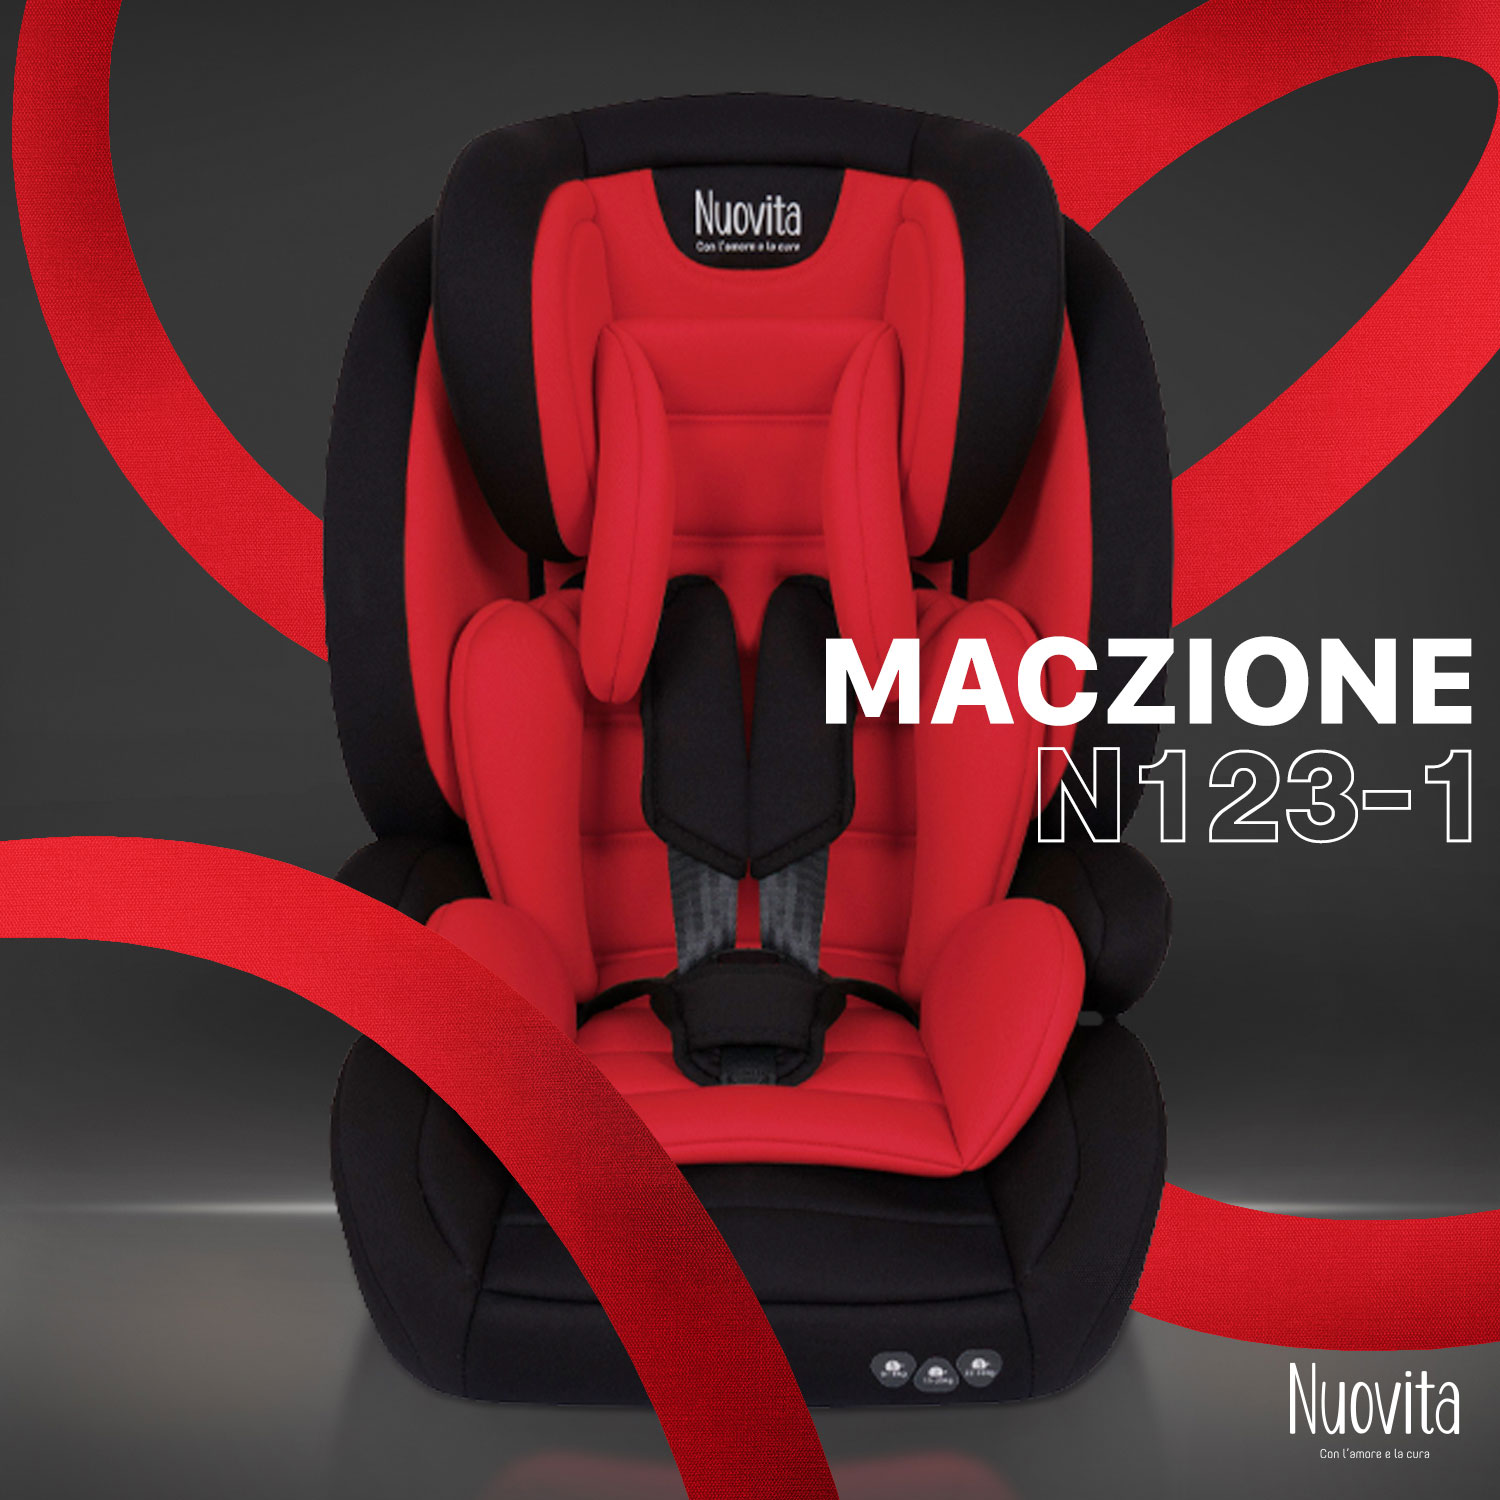 Детское автокресло трансформер Nuovita Maczione N123-1, группа 1-2-3, 9-36 кг (Красный) автокресло nuovita maczione n123 1